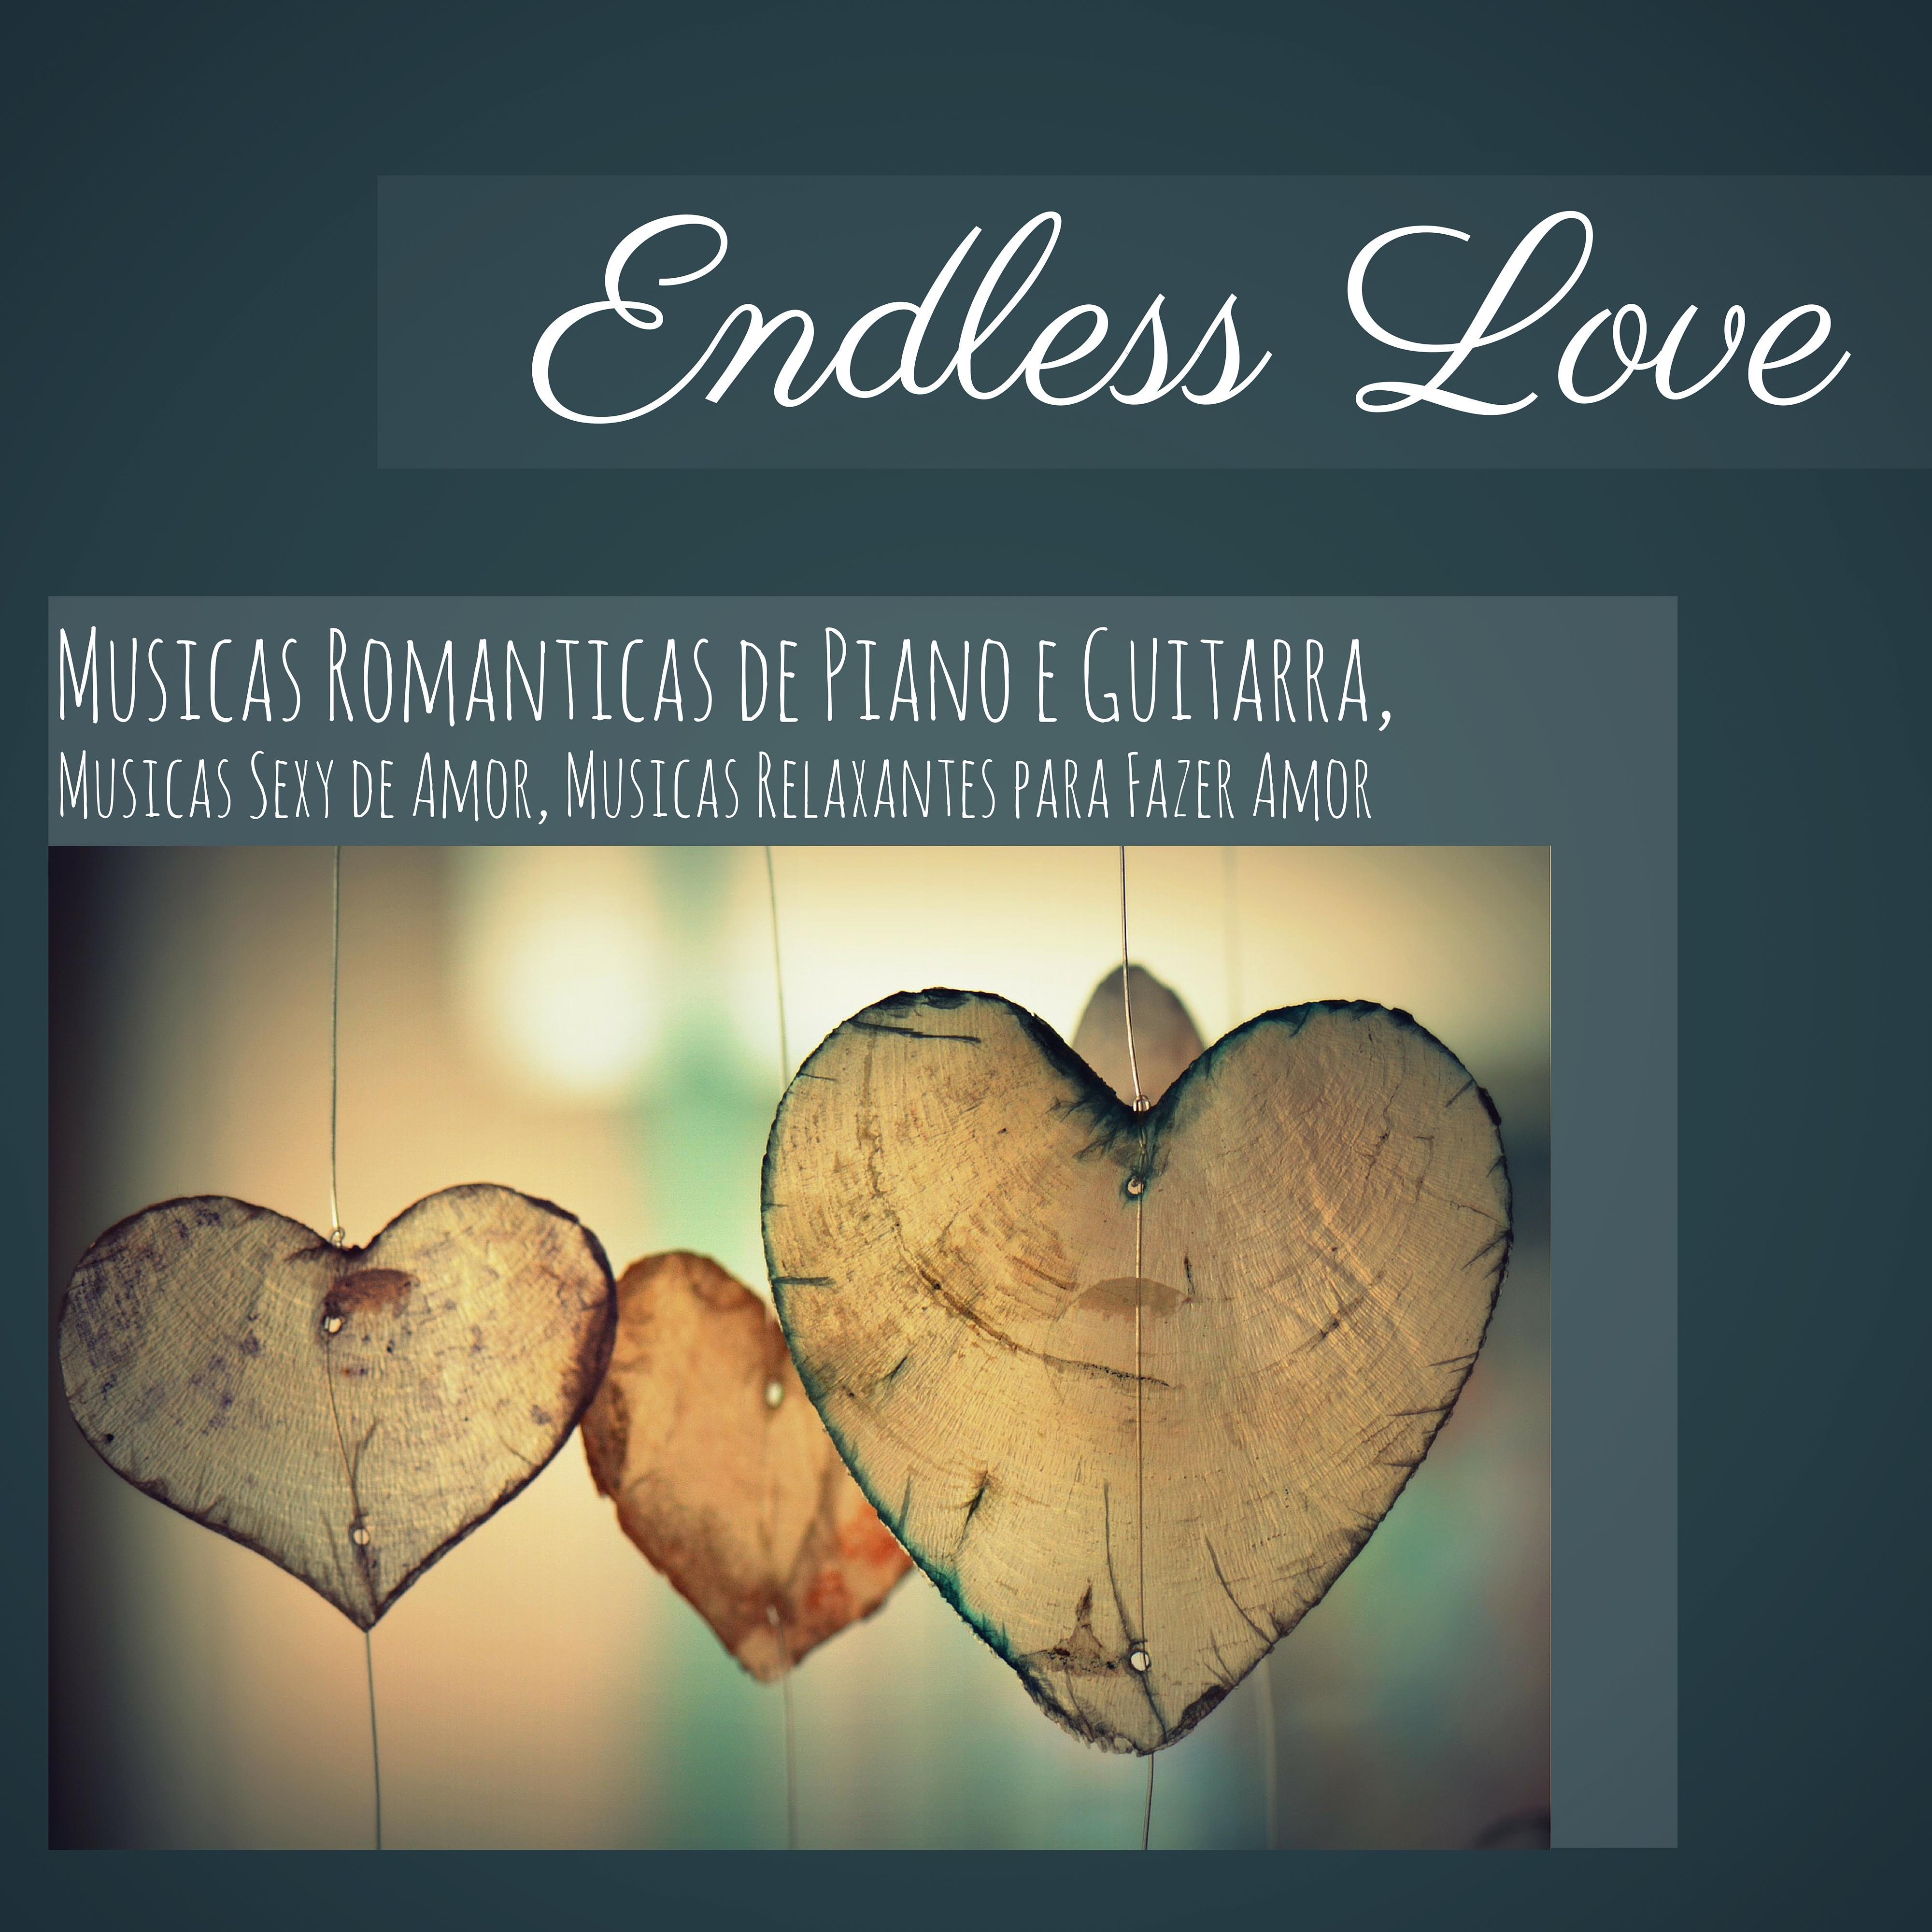 Endless Love: Musicas Romanticas de Piano e Guitarra, Musicas **** de Amor, Musicas Relaxantes para Fazer Amor